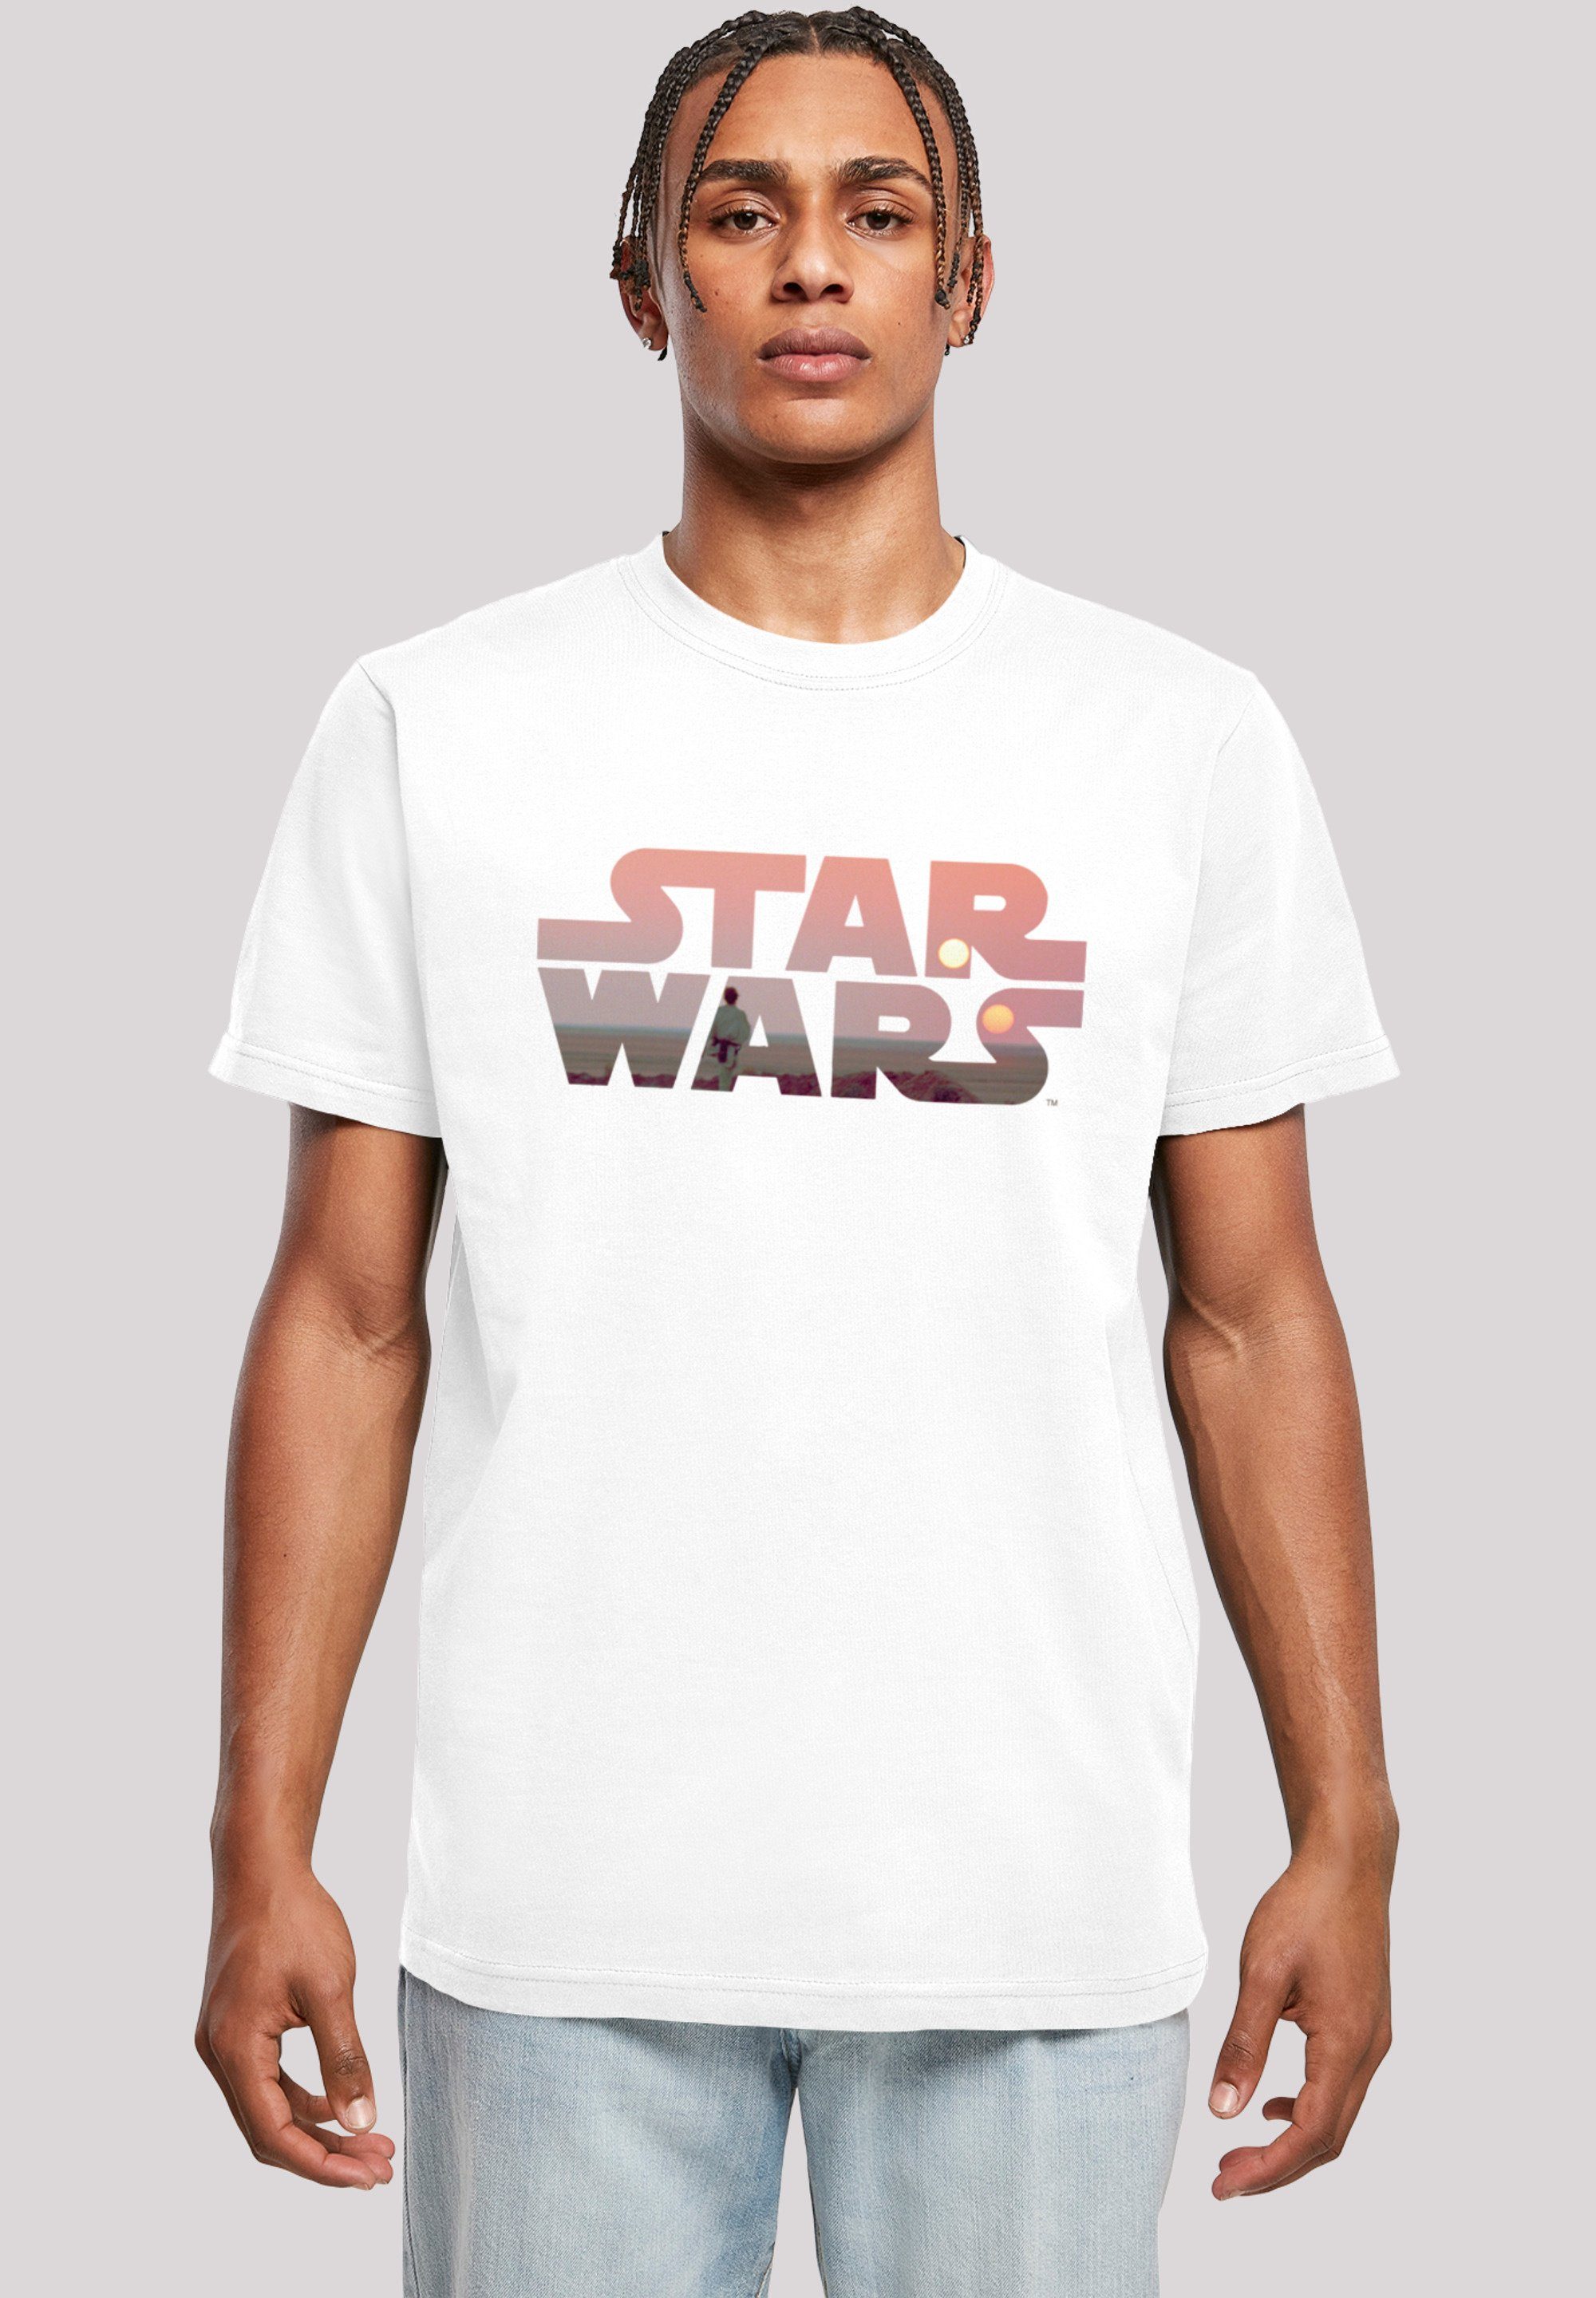 Logo Tatooine T-Shirt Print Star F4NT4STIC Wars weiß